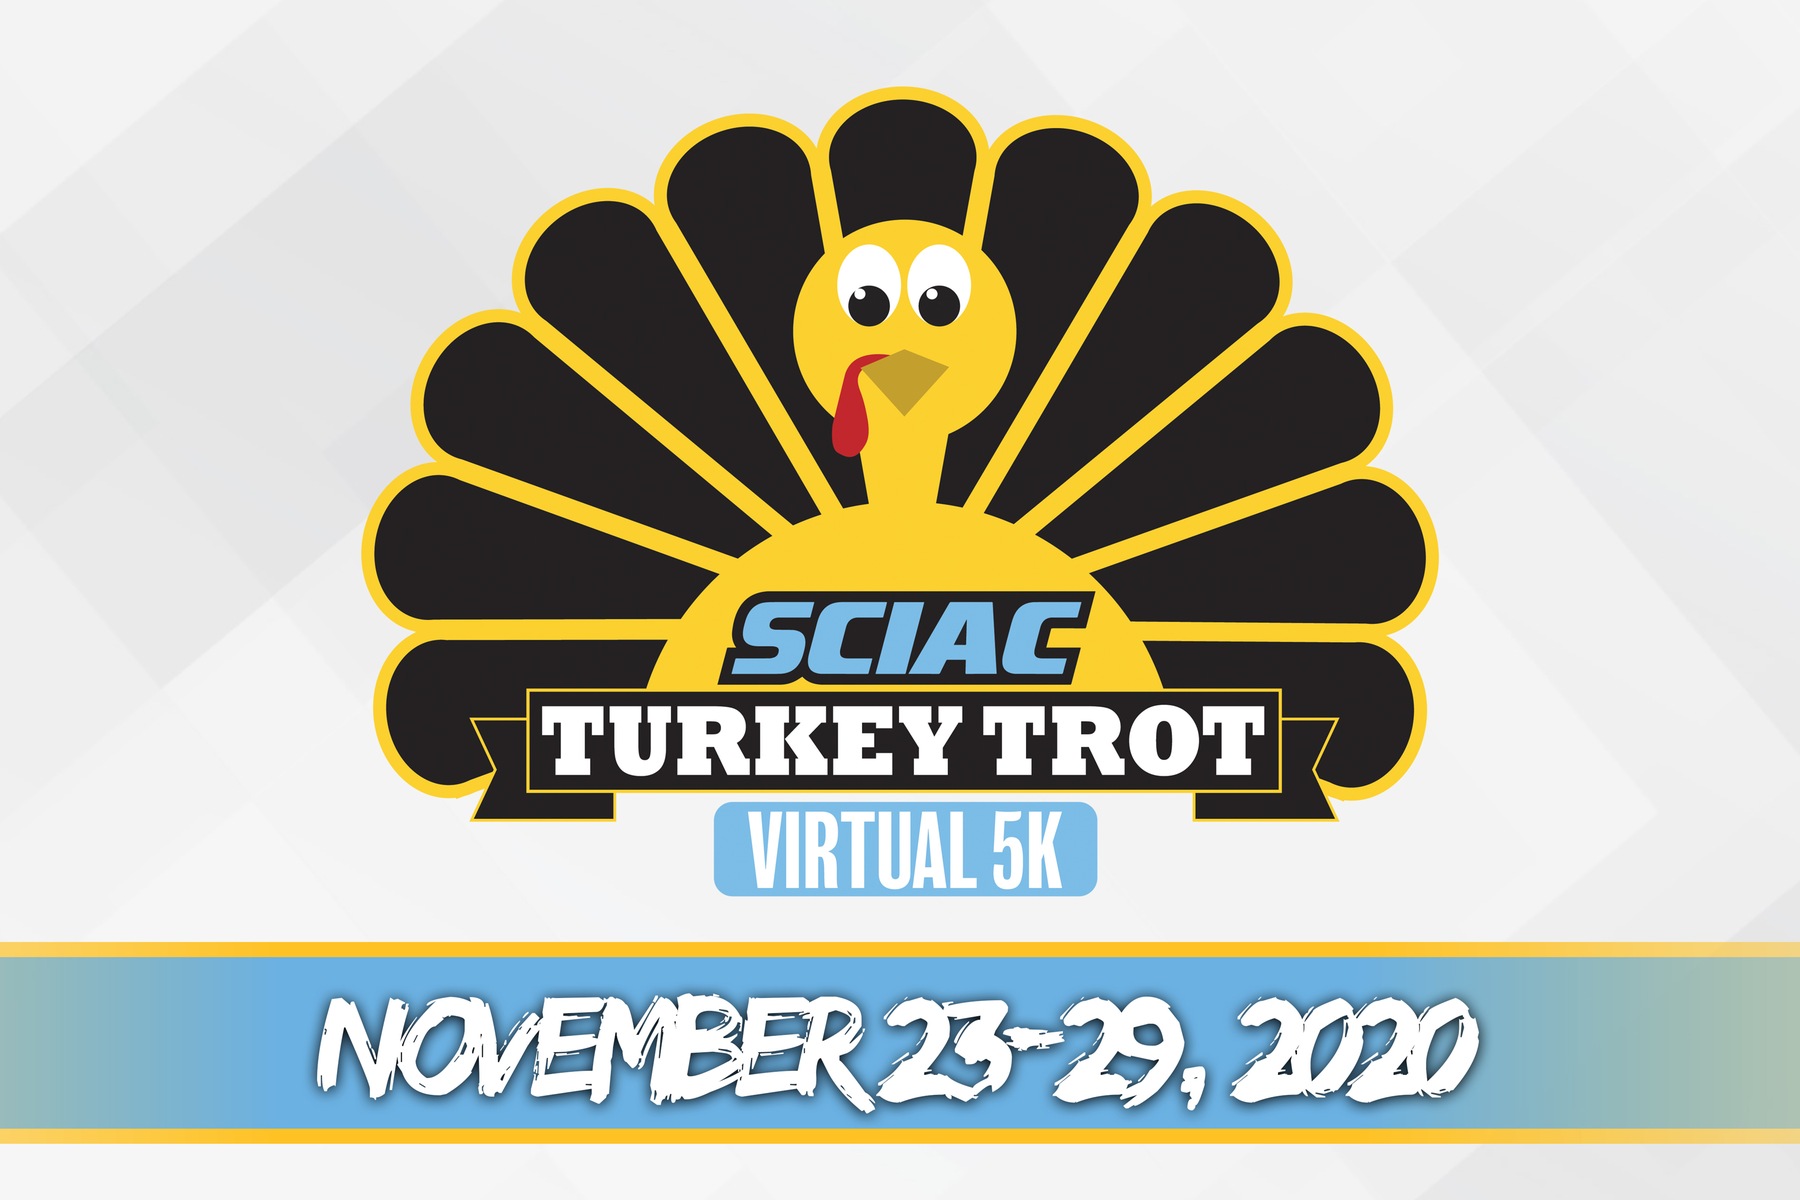 SCIAC to host Virtual 5K Turkey Trot November 23-29